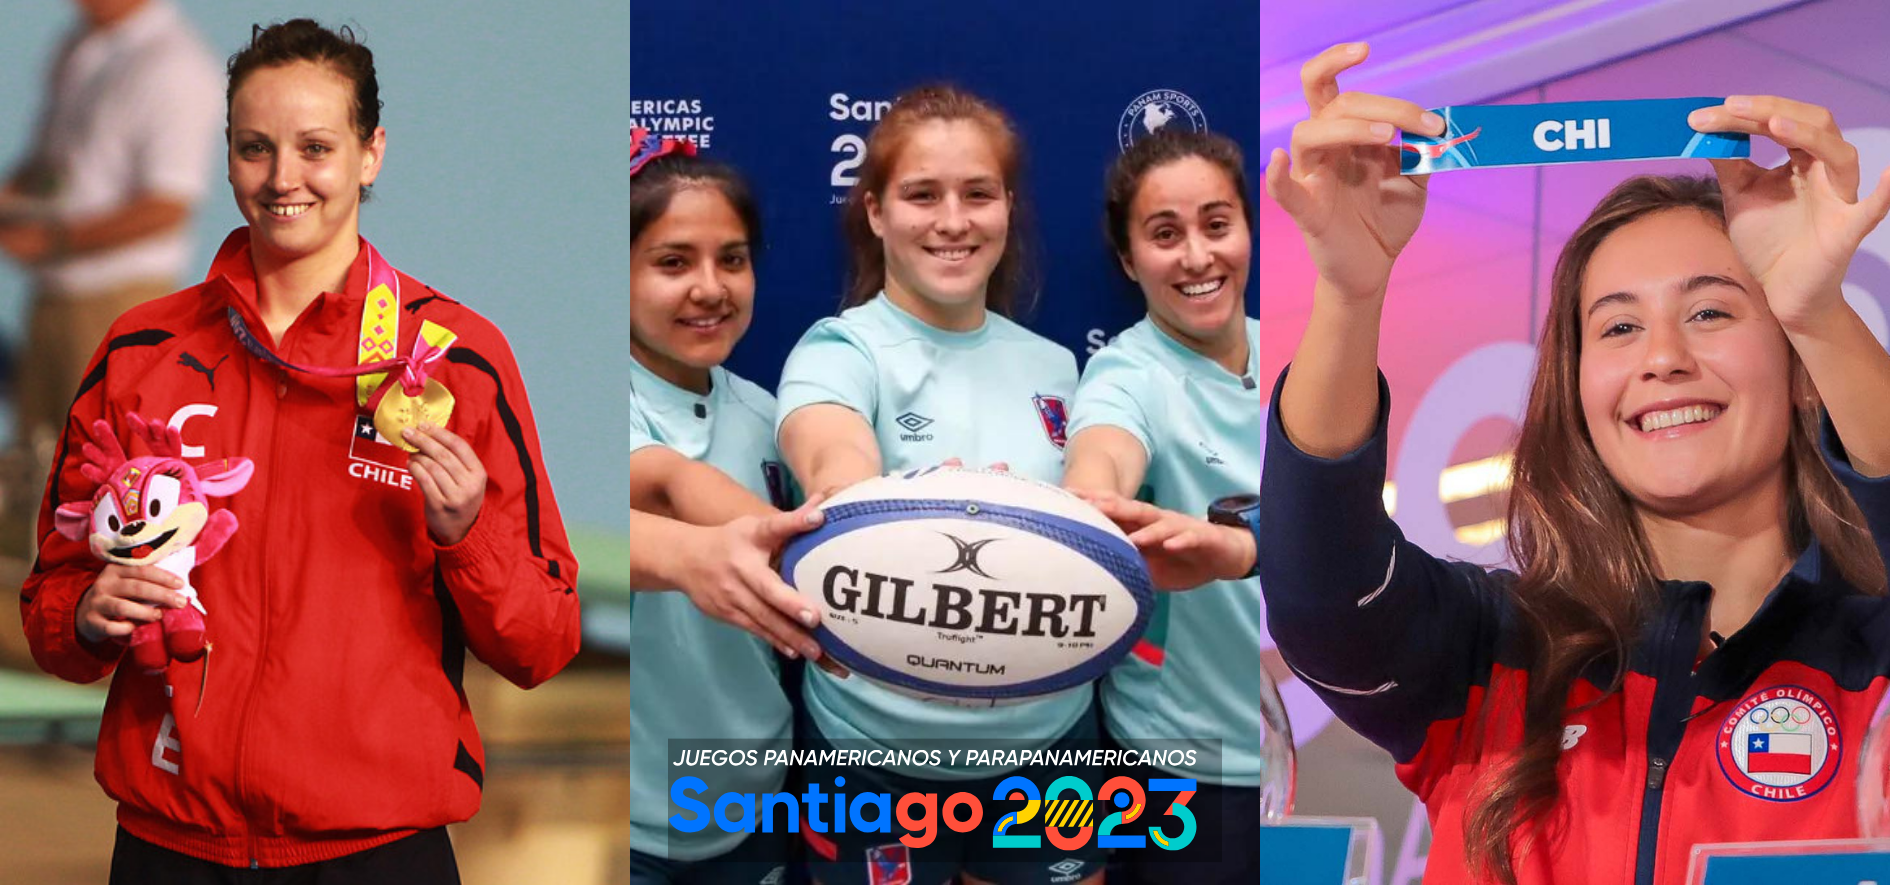 Estos son los deportes de Santiago 2023